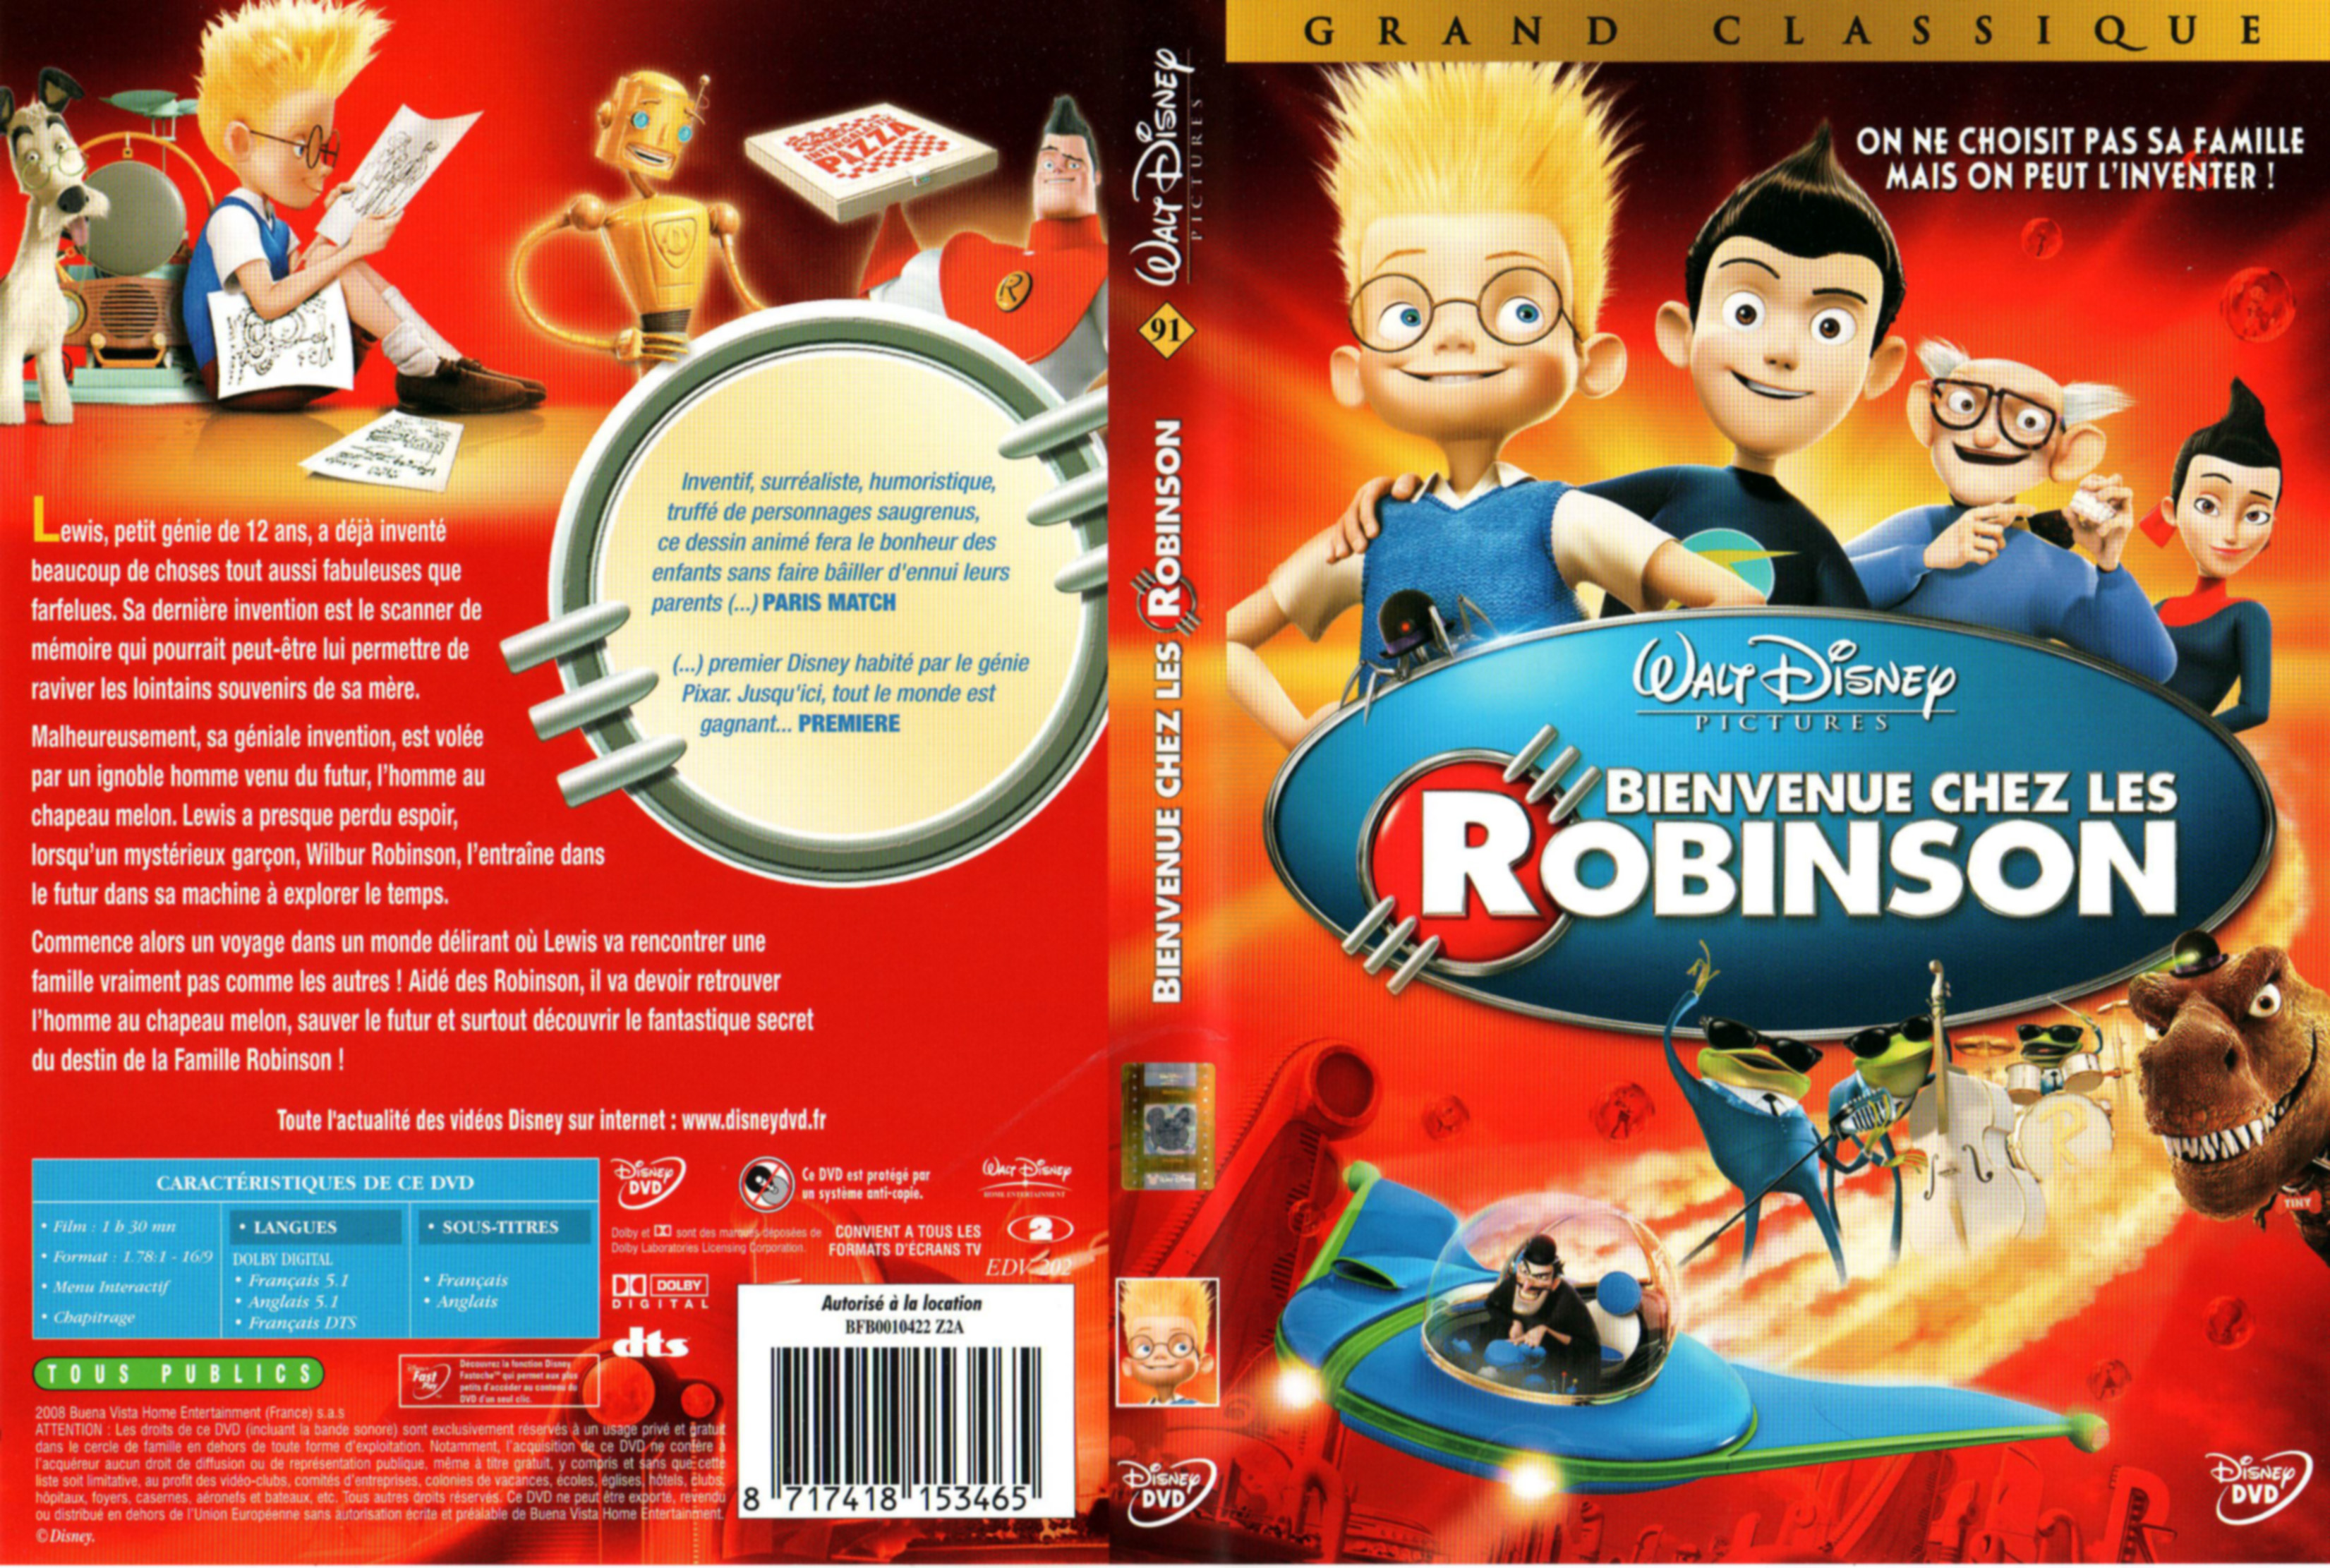 Jaquette DVD Bienvenue chez les Robinson